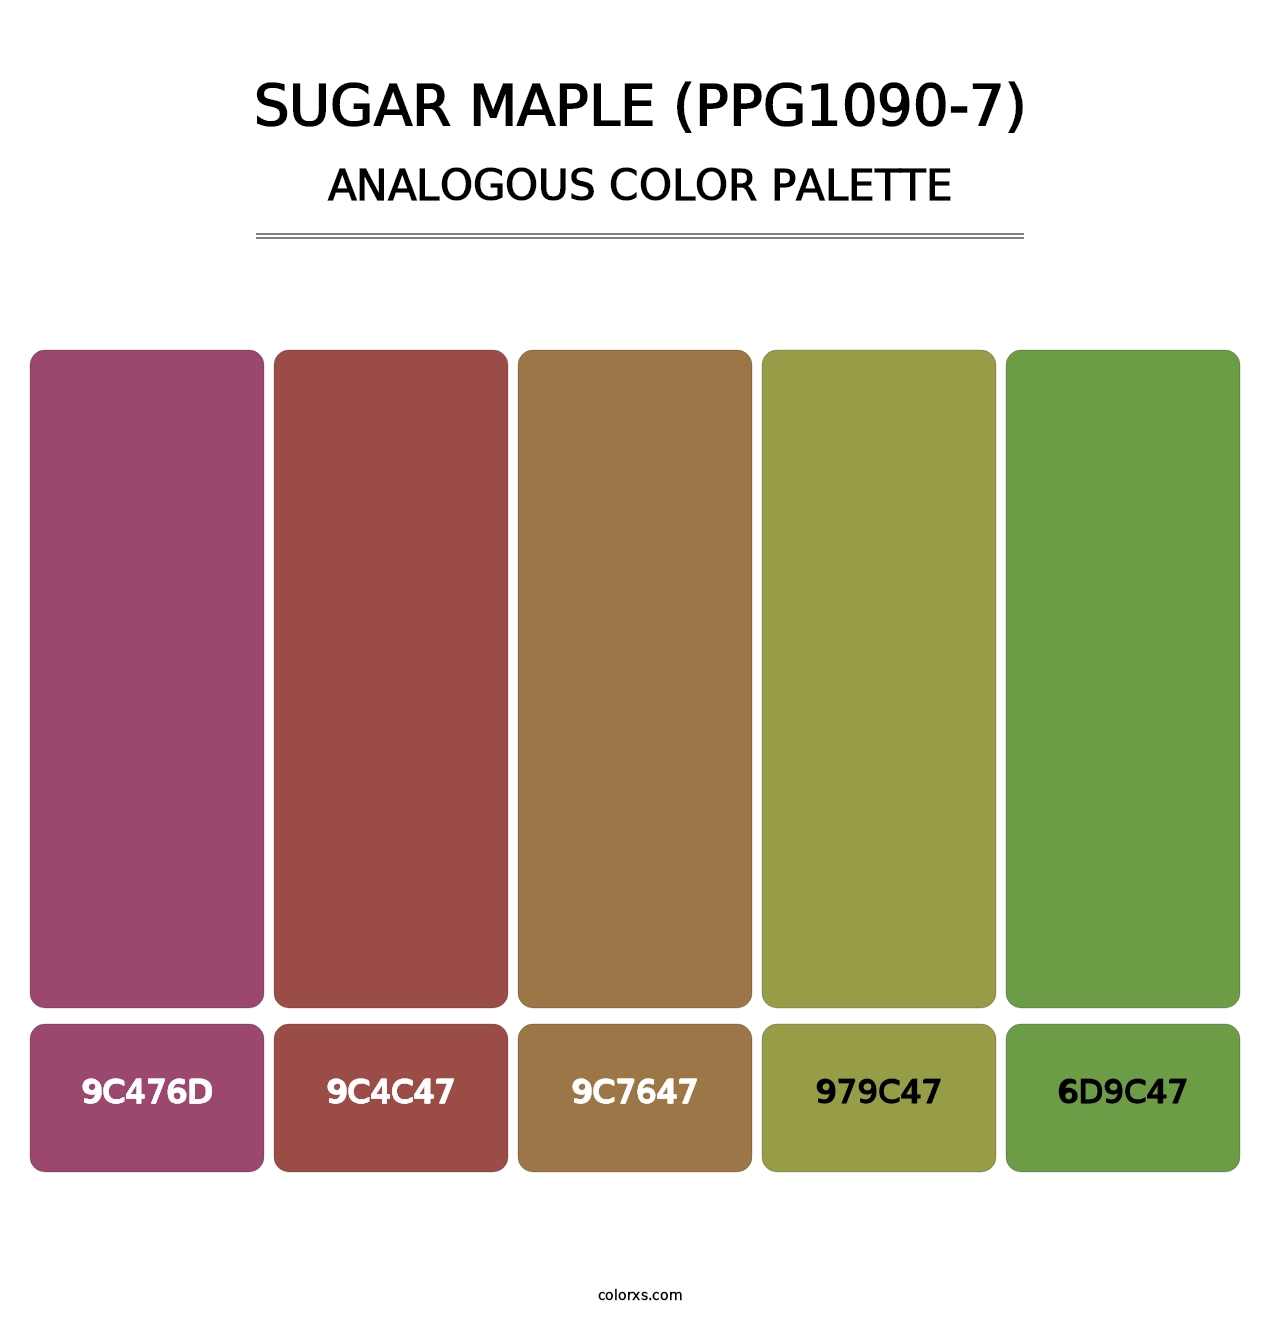 Sugar Maple (PPG1090-7) - Analogous Color Palette